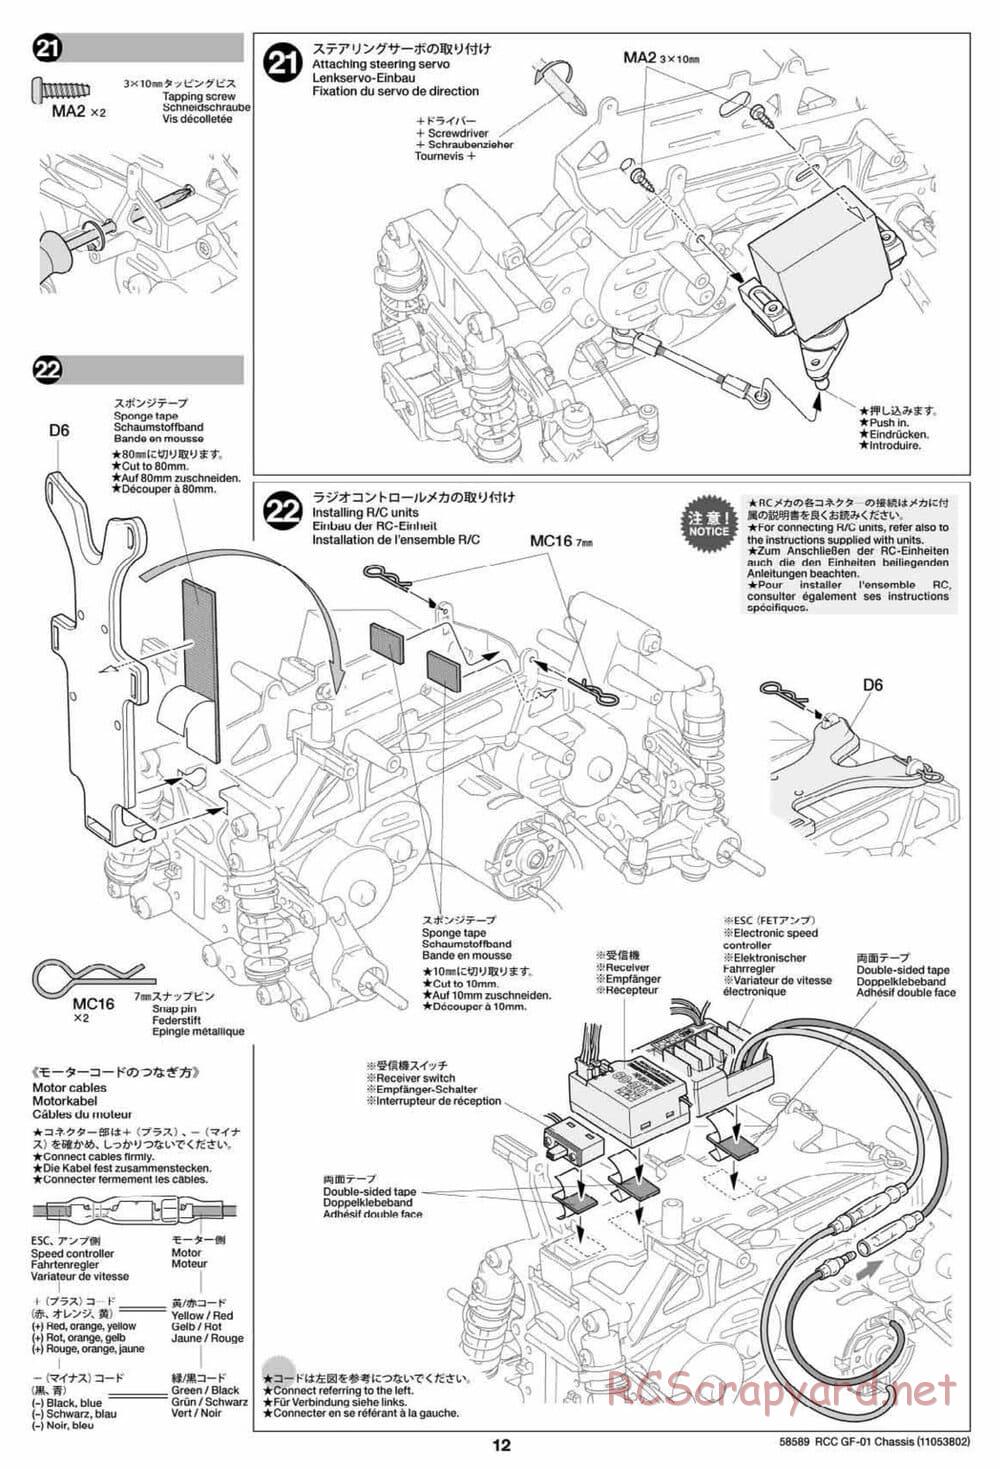 Tamiya - GF-01 Chassis - Manual - Page 12